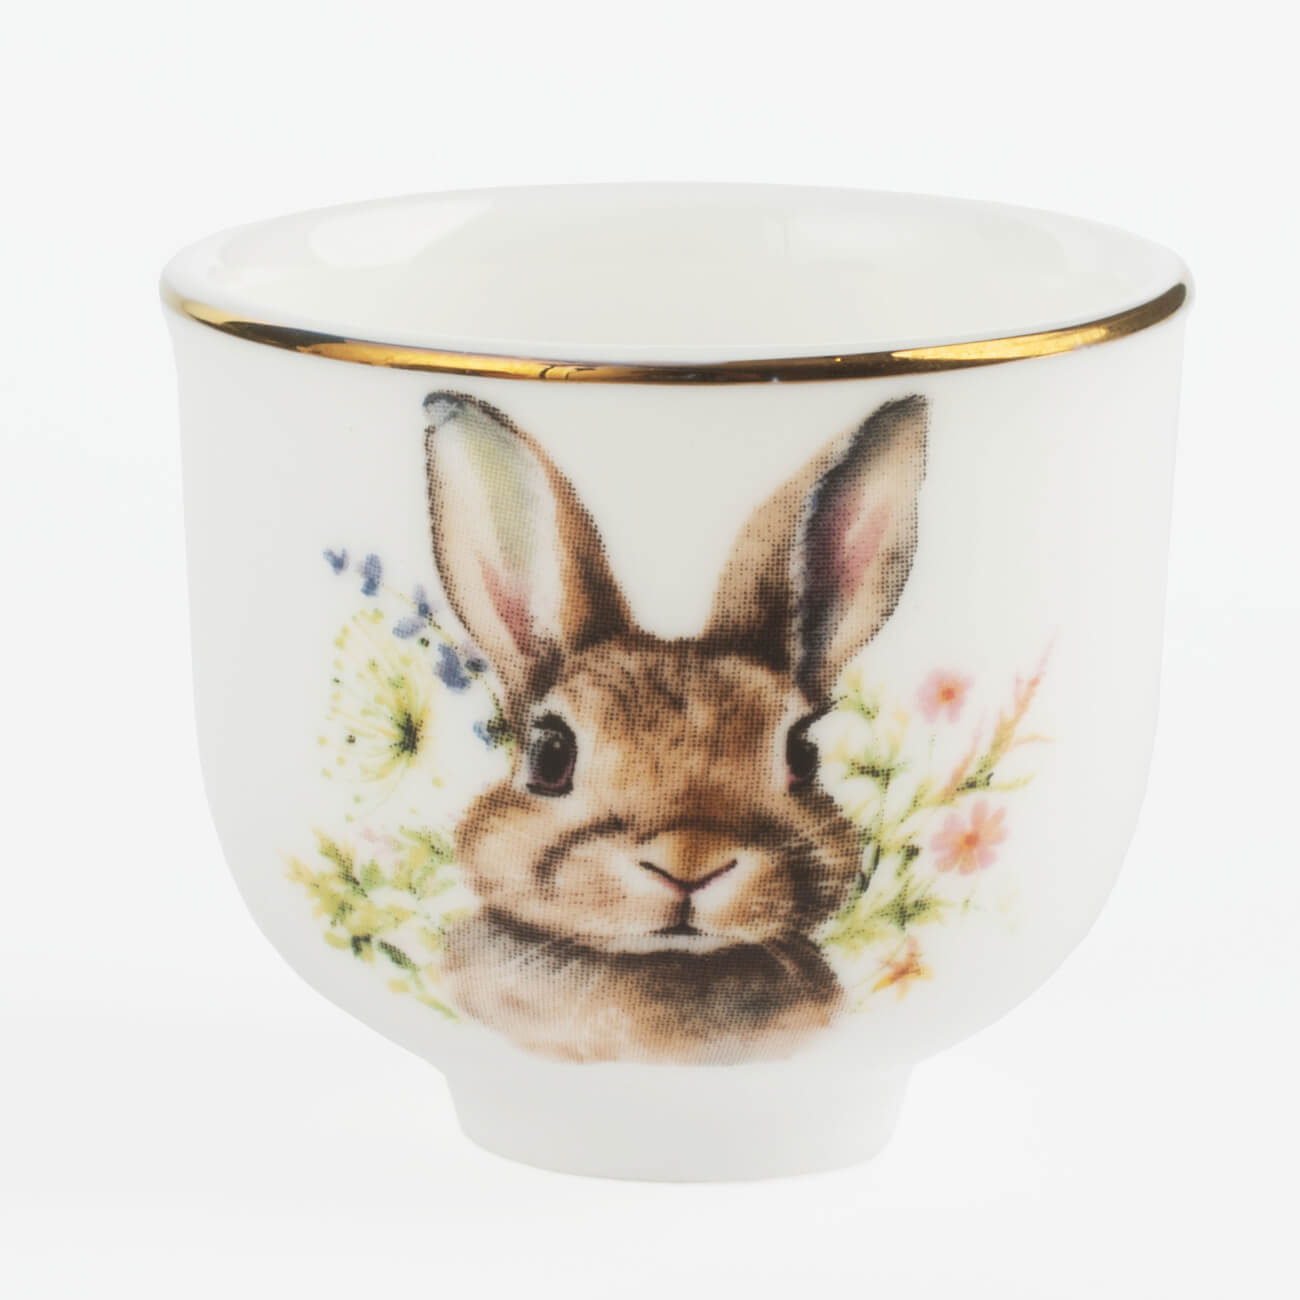 Подставка для яйца, 4 см, фарфор F, белая, с золотистым кантом, Кролик в цветах, Natural Easter